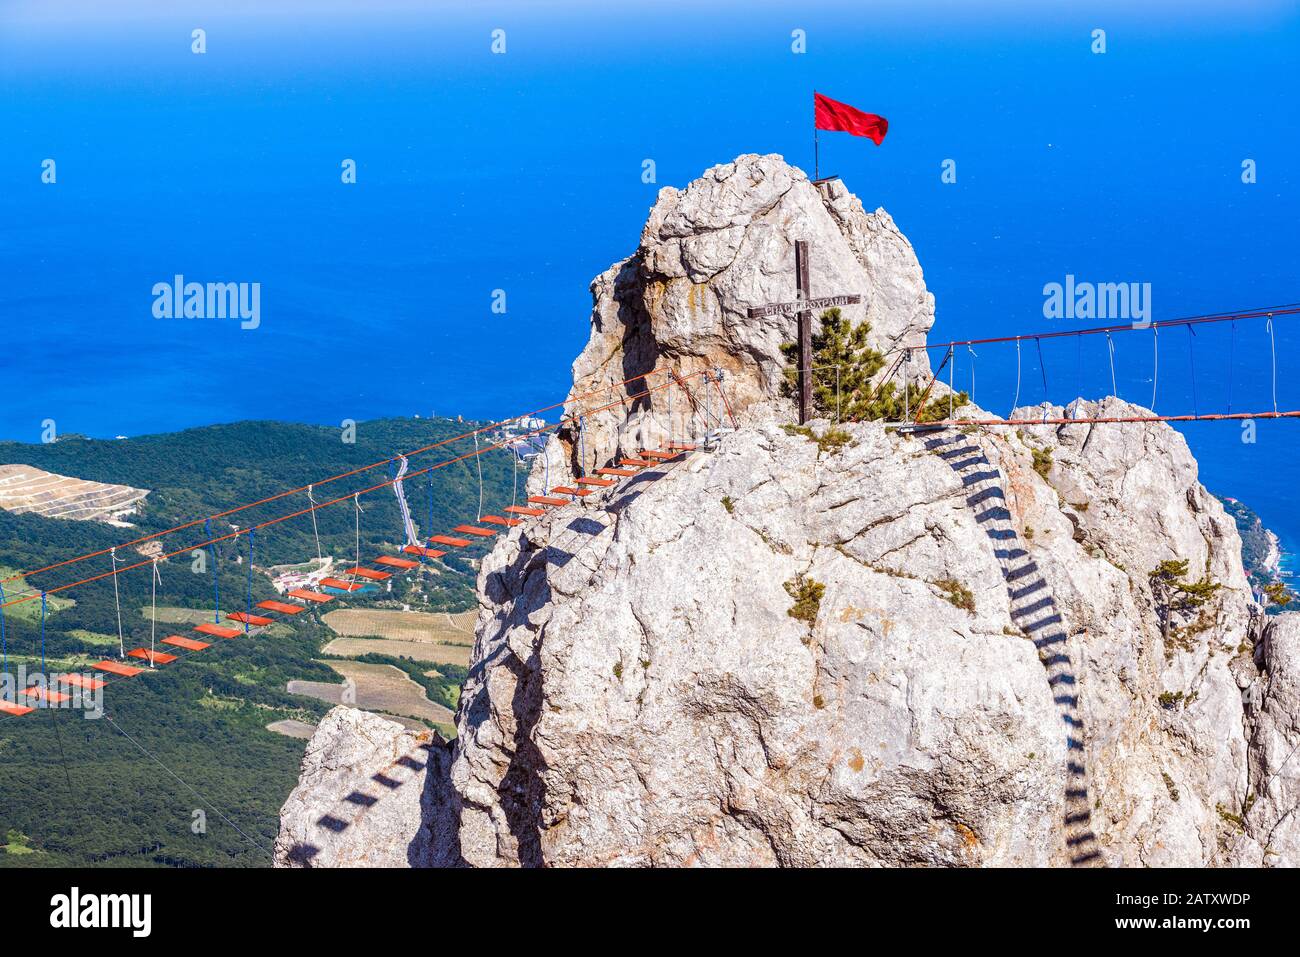 Felsen auf dem Berg Ai-Petri mit einer Seilbrücke, Krim, Russland. Es ist eines der natürlichen Wahrzeichen auf der Krim. "Speichern und Schützen" an einem Kreuz. Panorama o Stockfoto